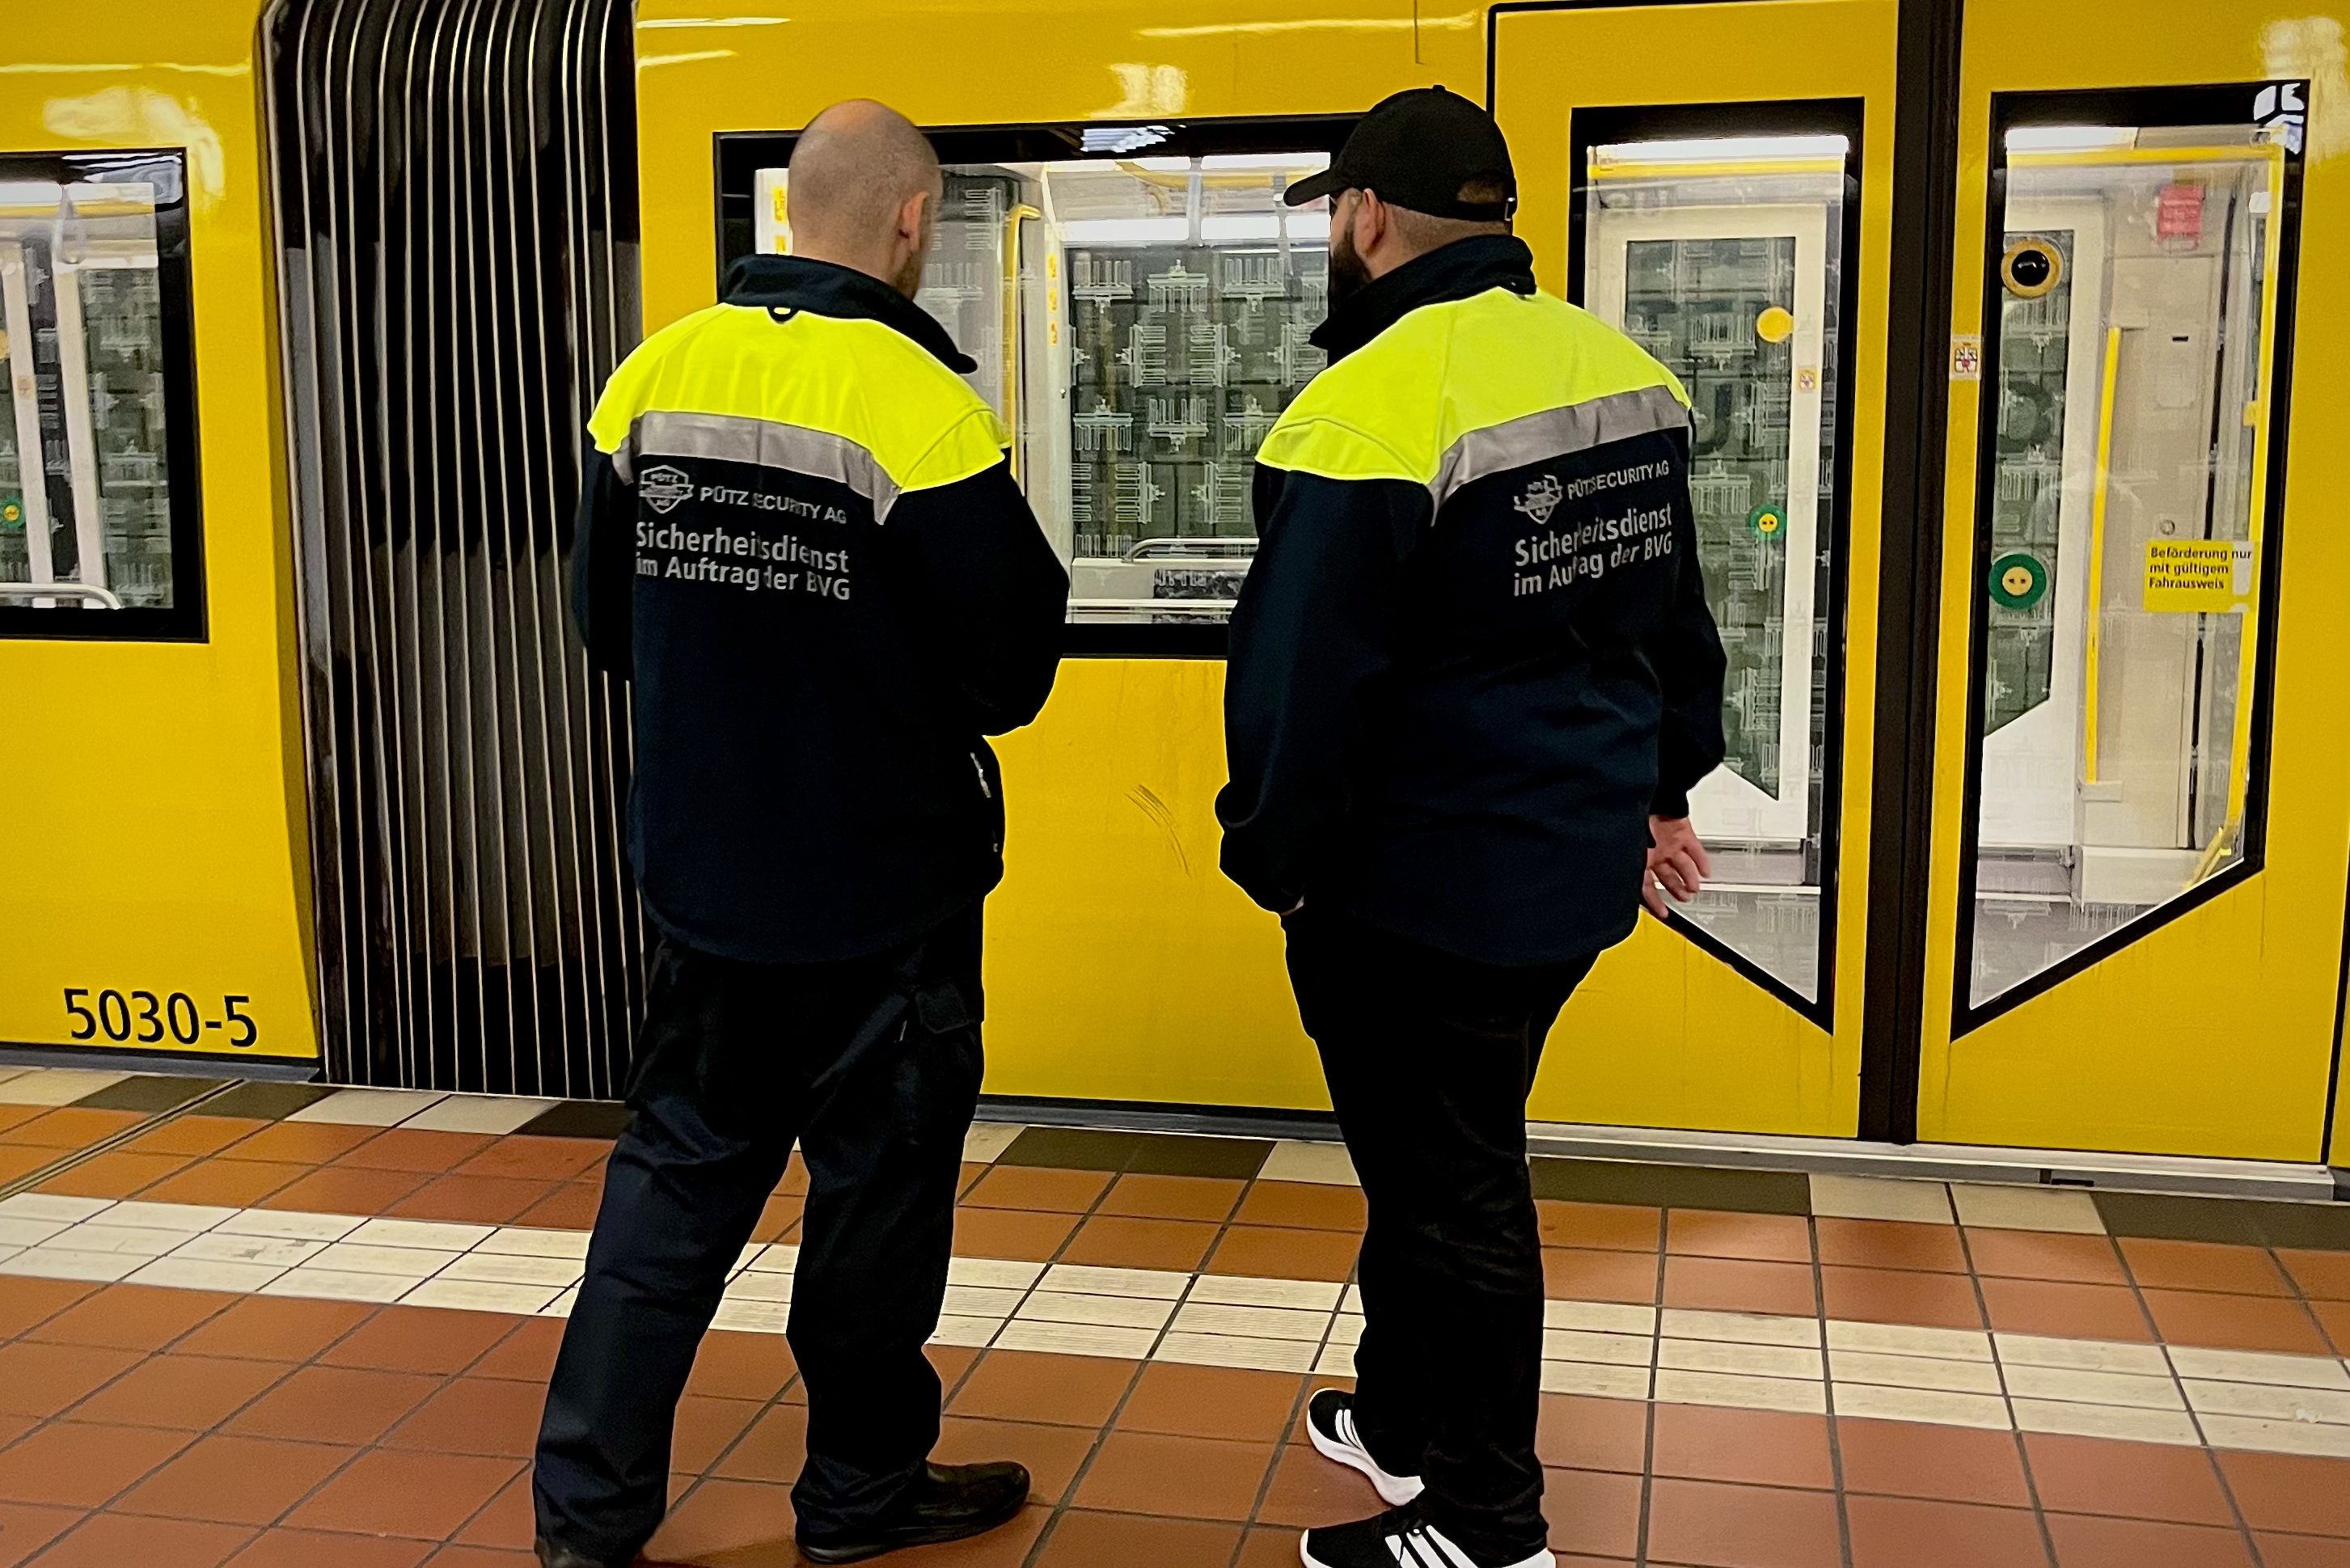 Alex, Kotti und Osloer Straße – Eine Nacht in Berlins gefährlichster U-Bahn Linie